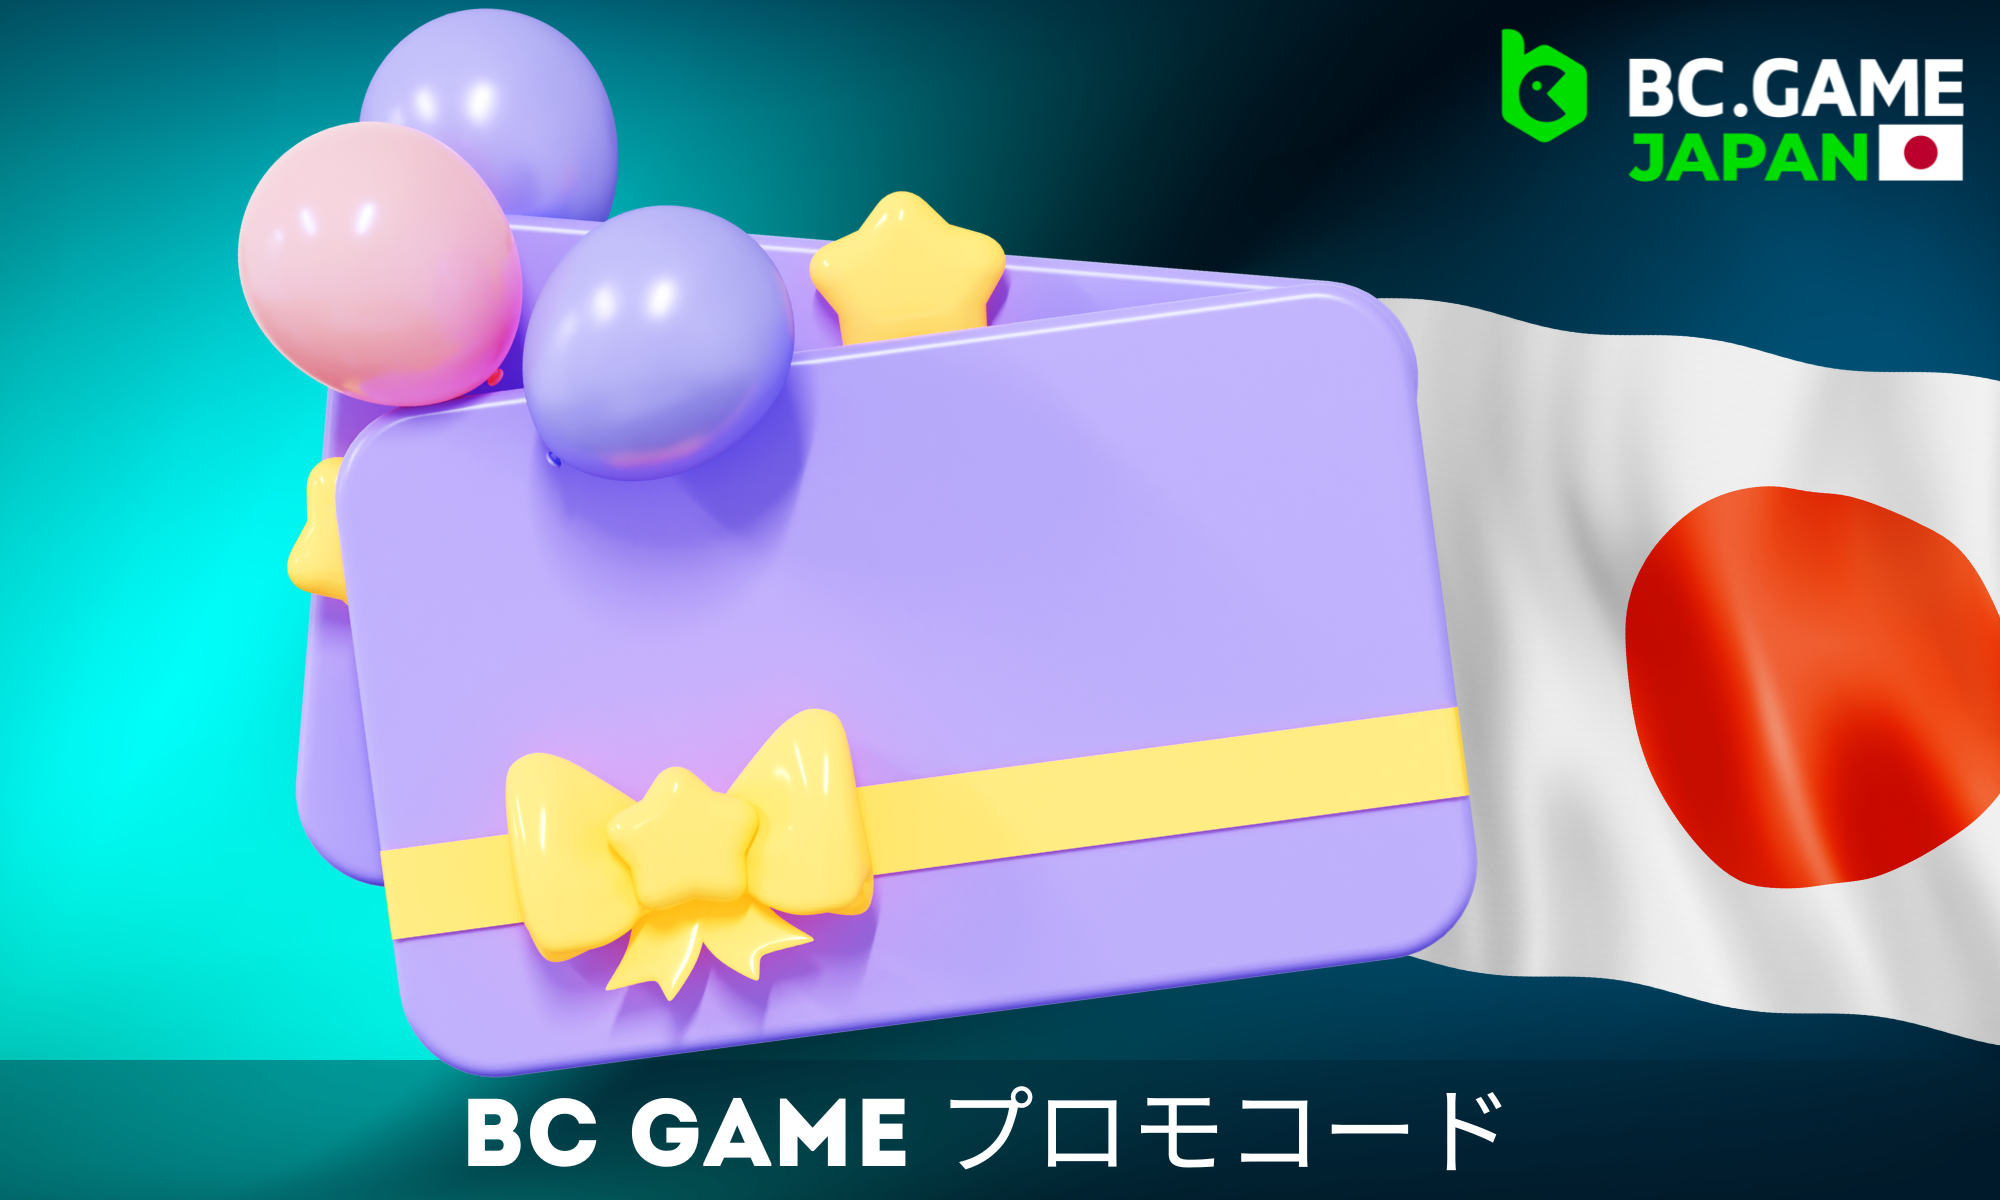 BC Gameは日本からのプレーヤーのために特別なプロモコードを用意している。